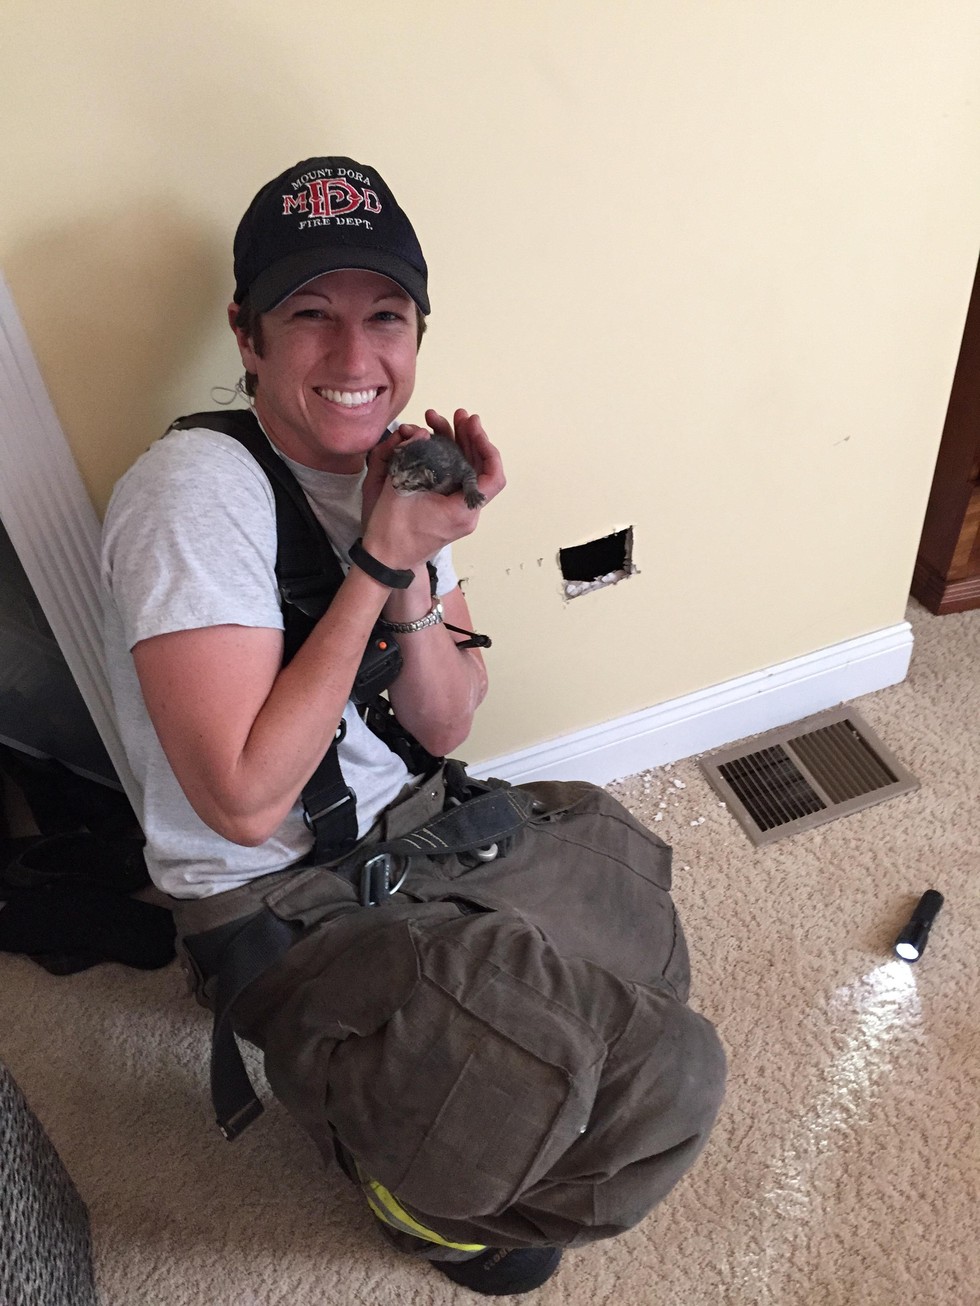 消防员塔拉 (Tara Holcomb) 救了这只小猫两次，第一次是从他卡在里头的墙壁、第二次则是让他成为永远的家人。